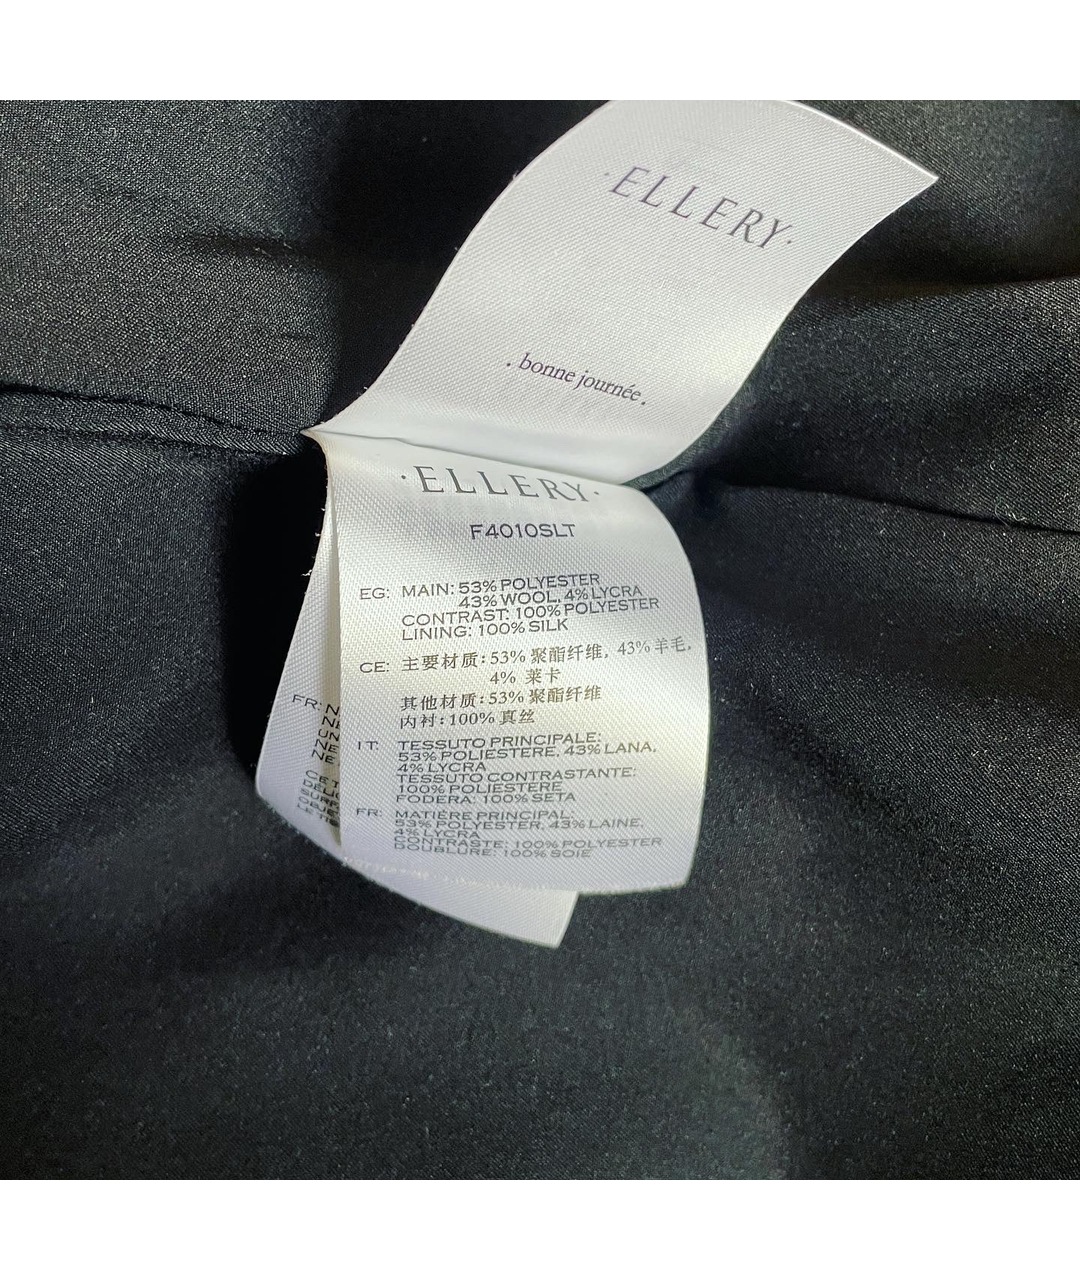 ELLERY Черный шерстяной жакет/пиджак, фото 8